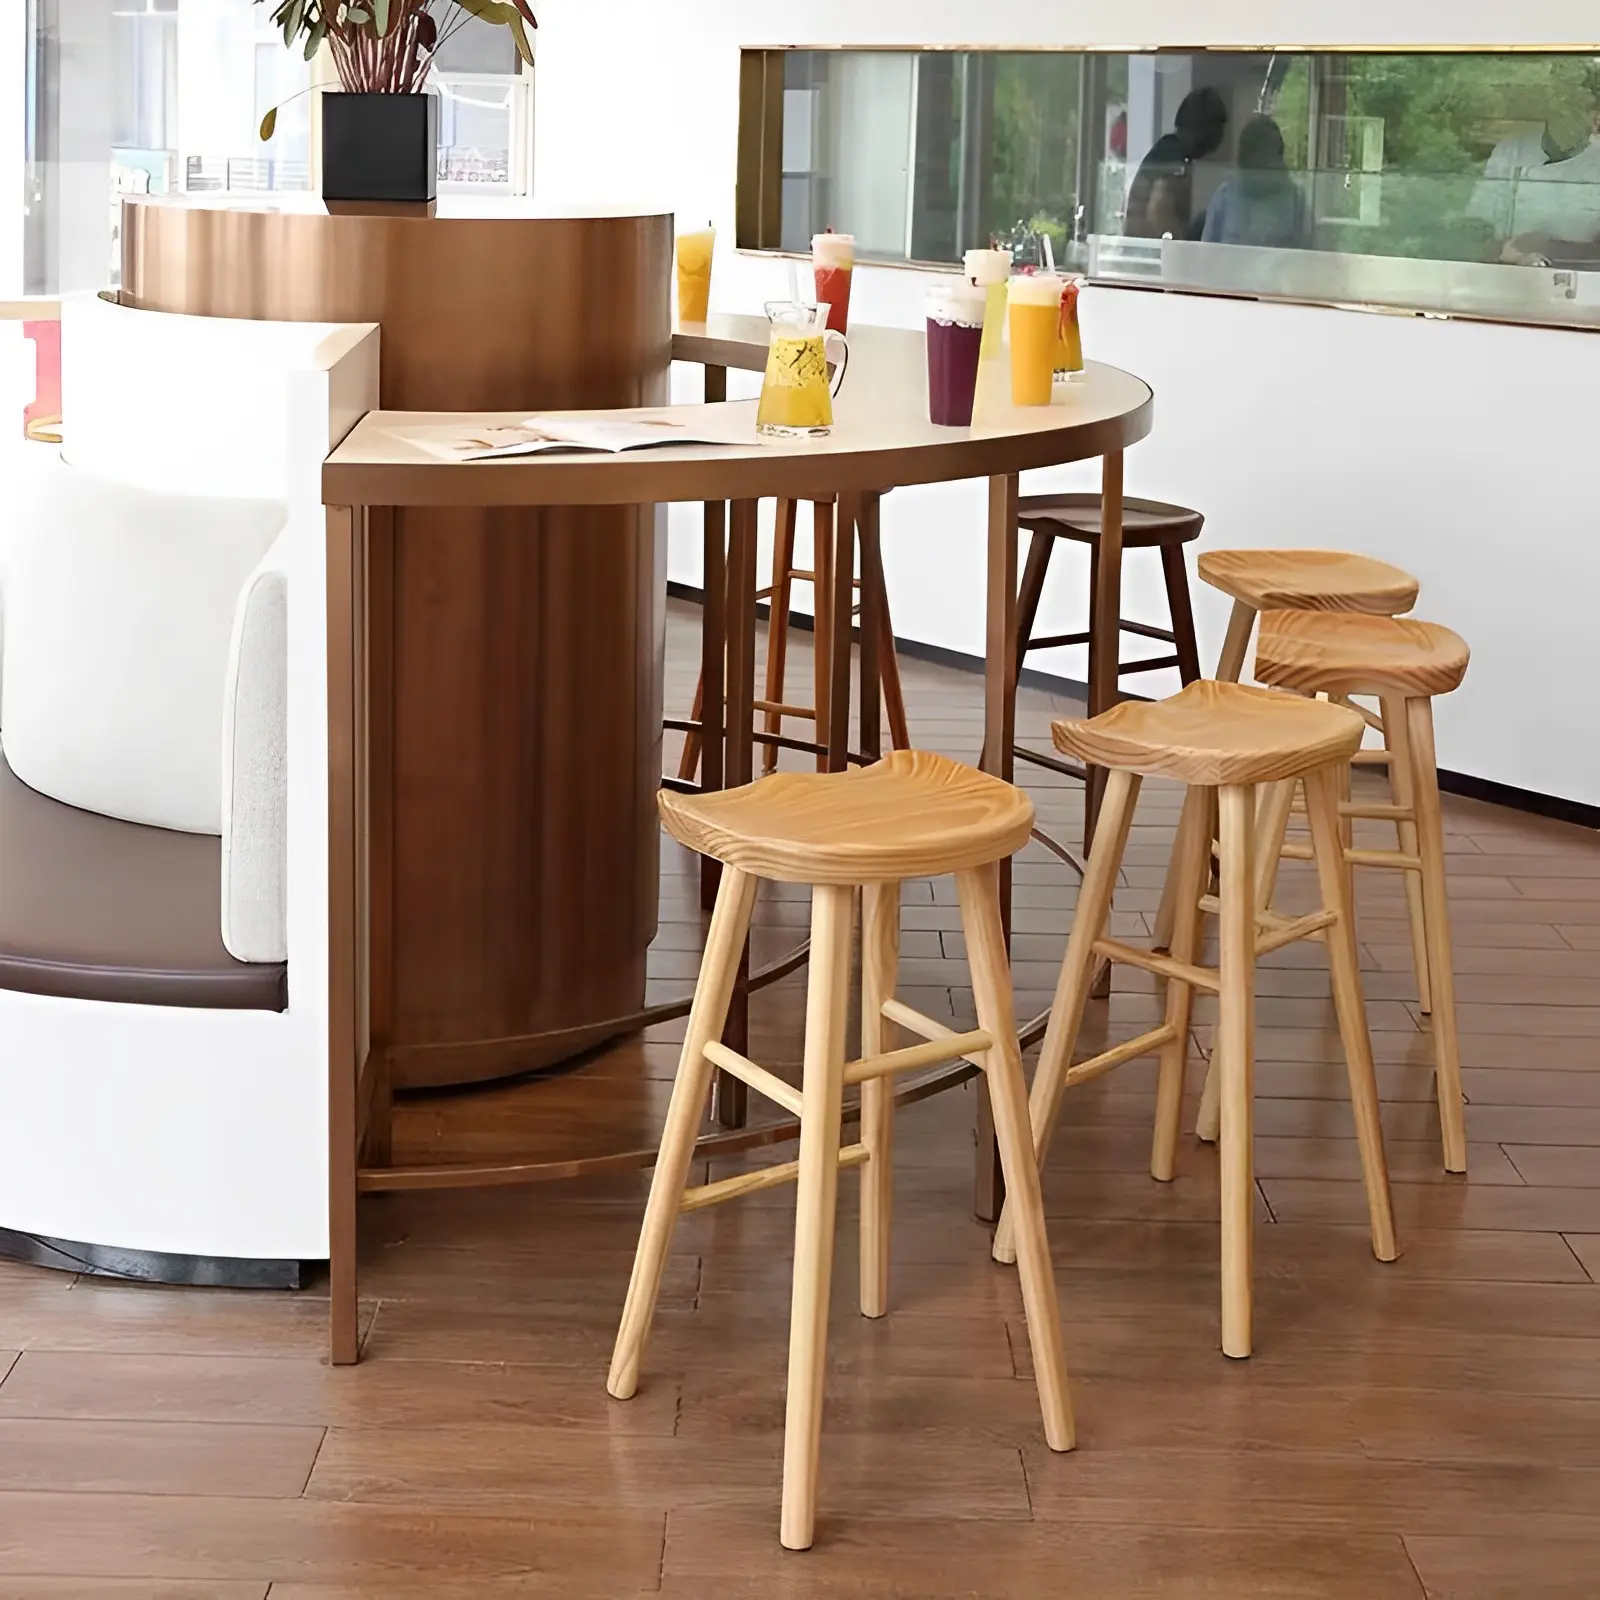 Tabouret de bar en bois moderne de qualité naturelle pour cuisine, restaurant, café, style design scandinave